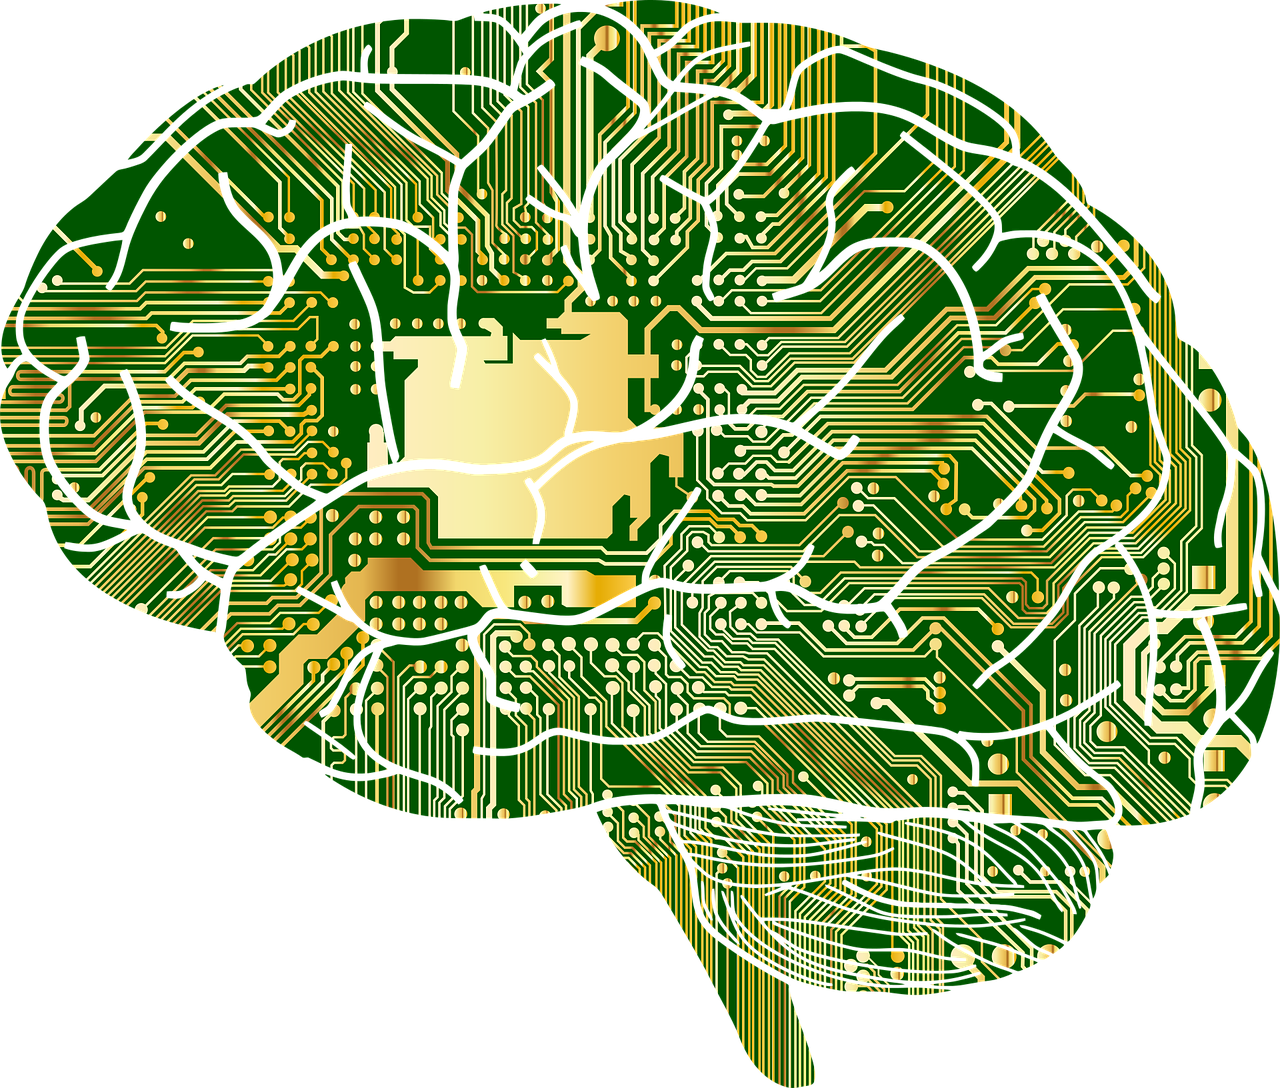 Gehirn mit Mikrochips von https://pixabay.com/de/vectors/anatomie-biologie-gehirn-gedanken-1751201/